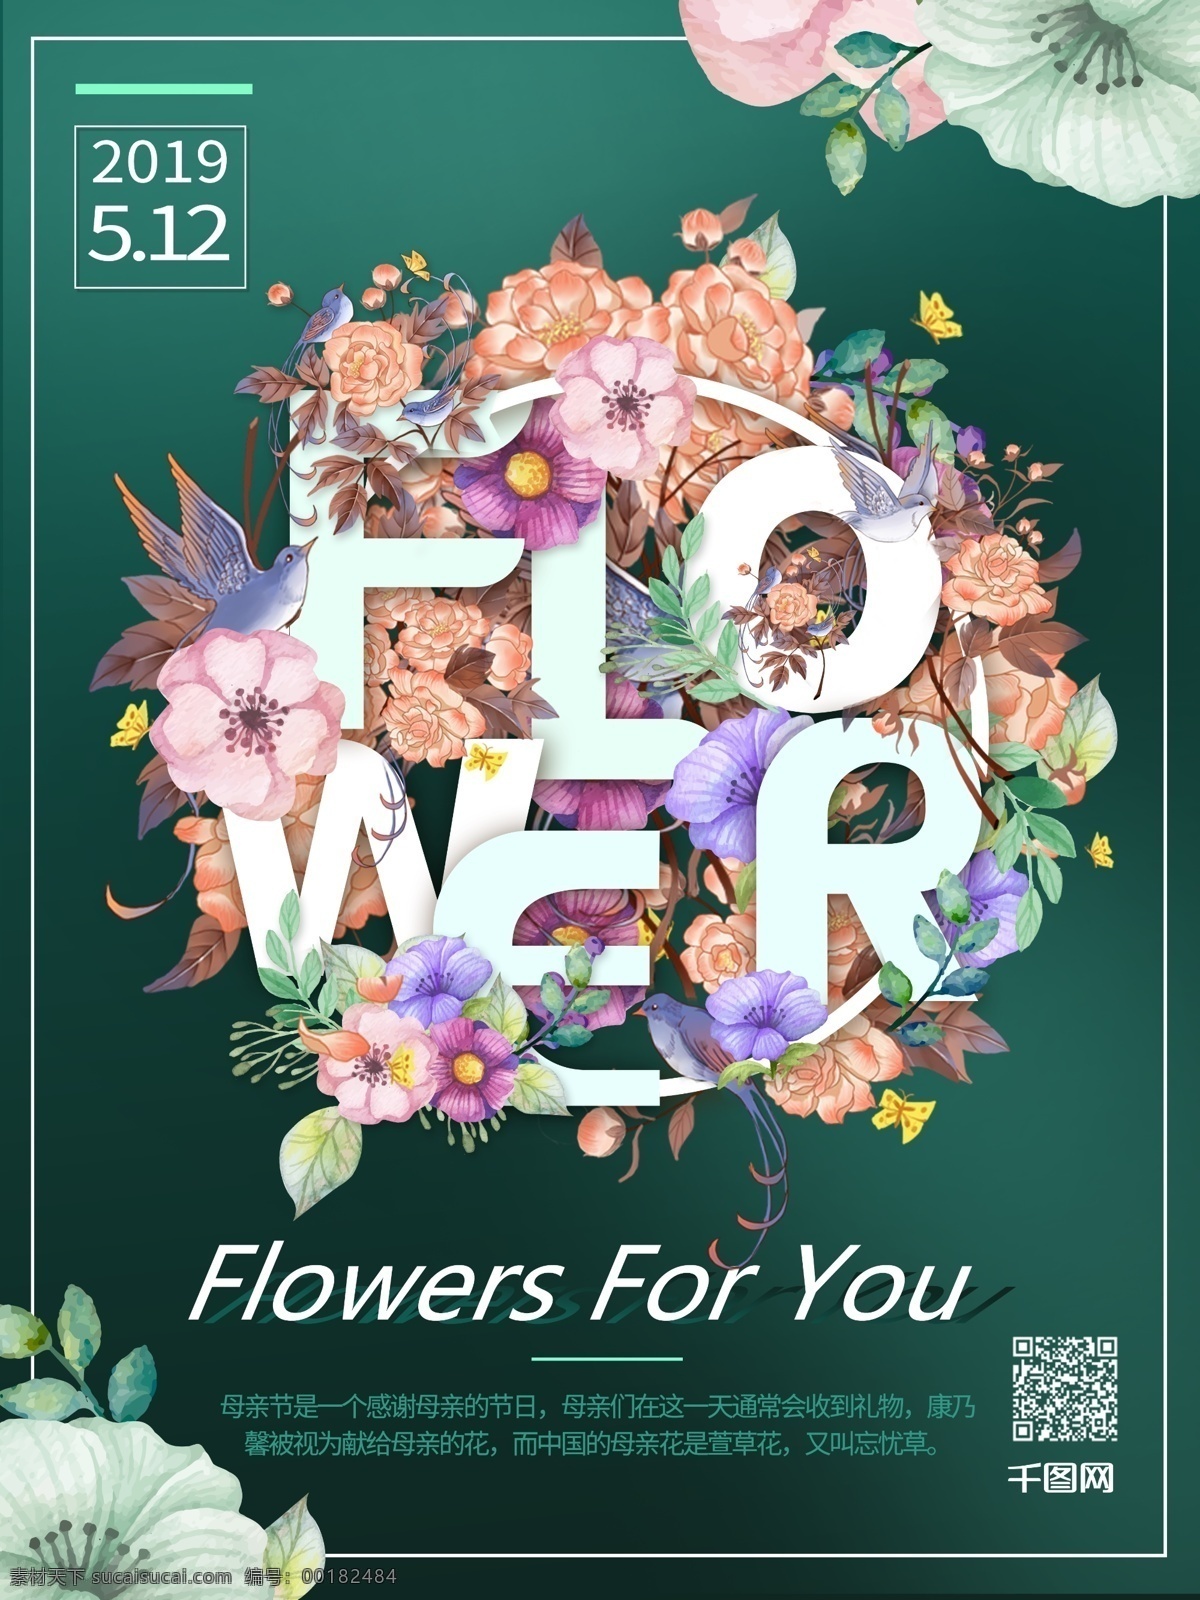 趋势 母亲节 创意 花卉 艺术 字体 排版 节日 海报 花卉排版海报 母亲节海报 祖母绿 花卉创意海报 节日海报